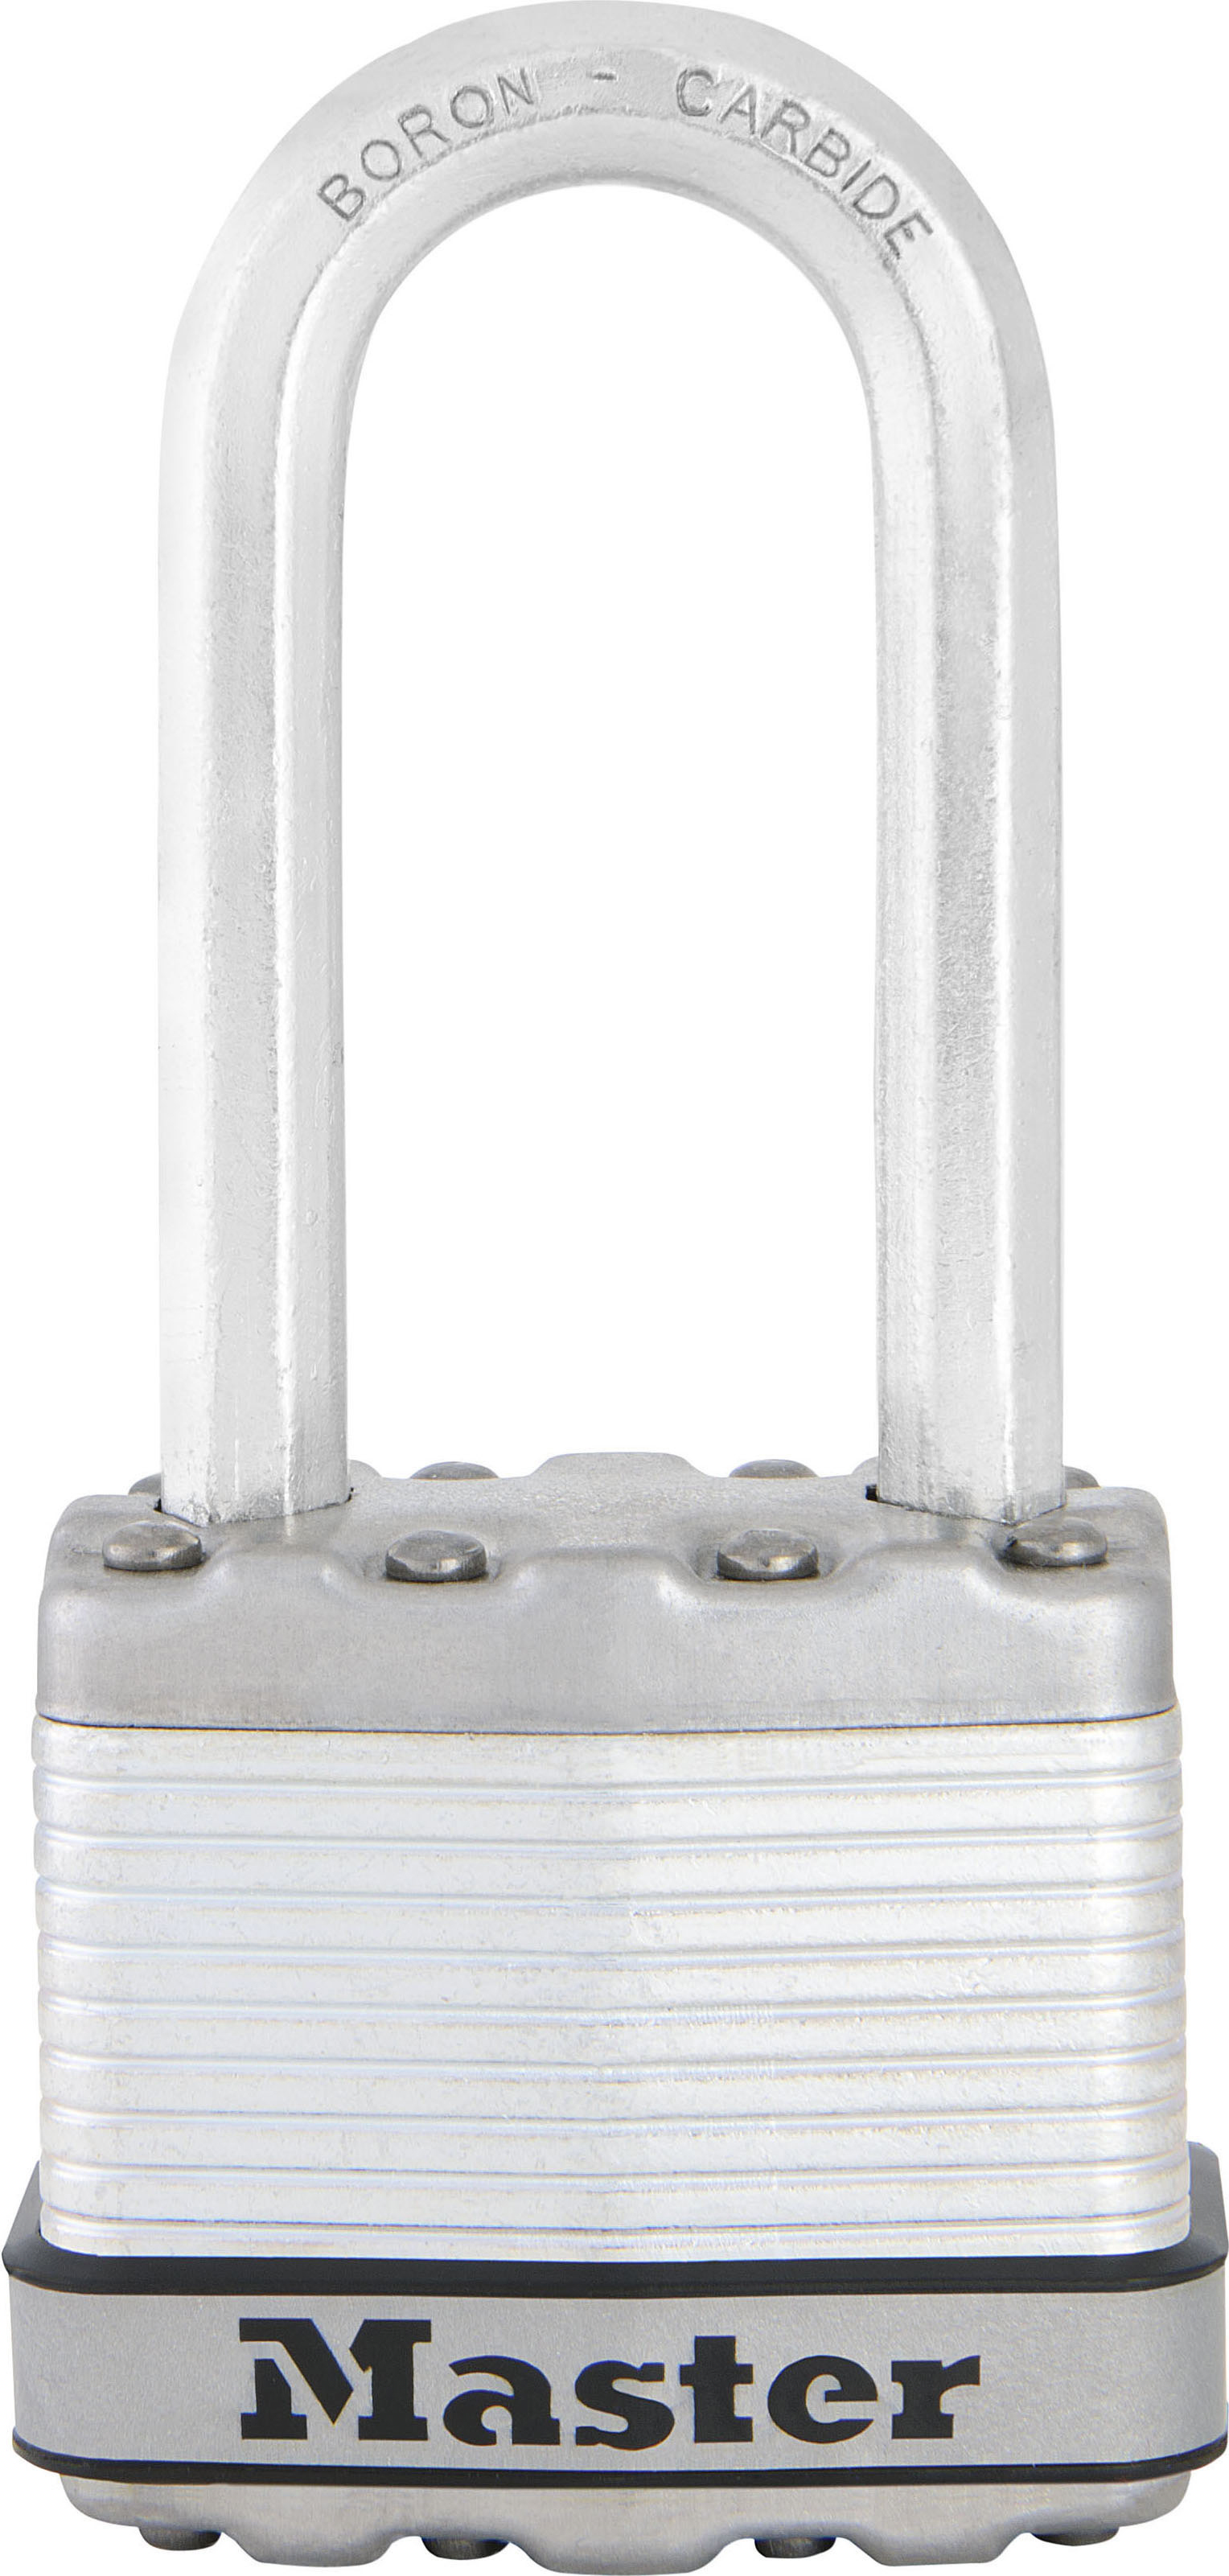 Masterlock 45 mm breed Excell-hangslot van gelamineerd staal met een beugel van 51 mm lang